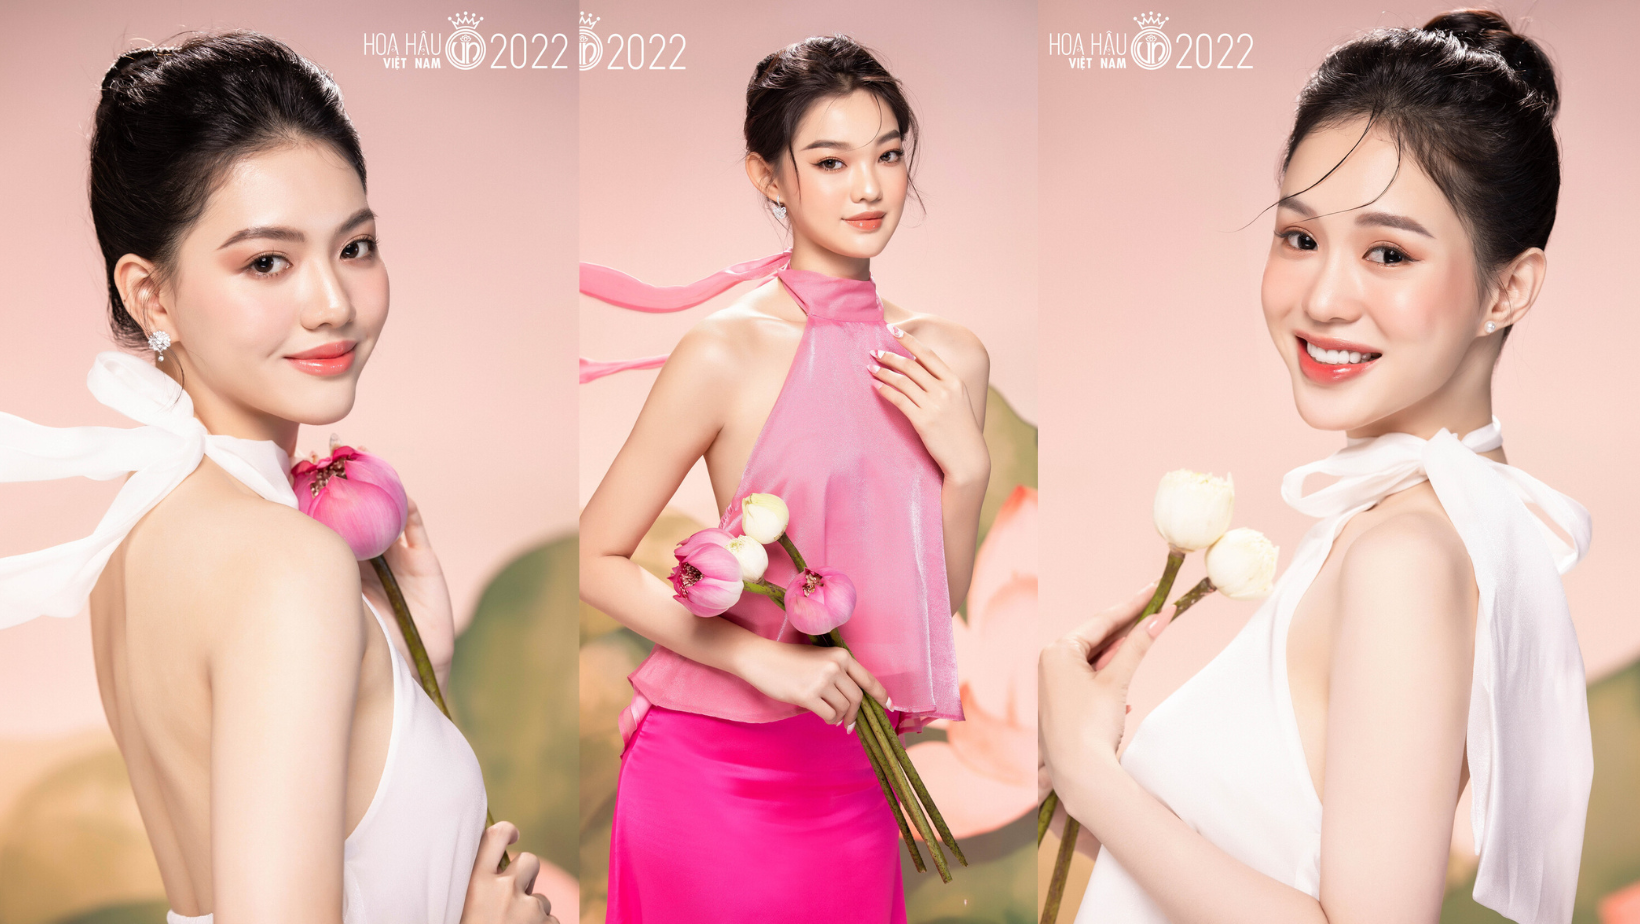 Hoa hậu Việt Nam 2022 tung bộ ảnh profile, xuất hiện nhiều nhan sắc gây thương nhớ